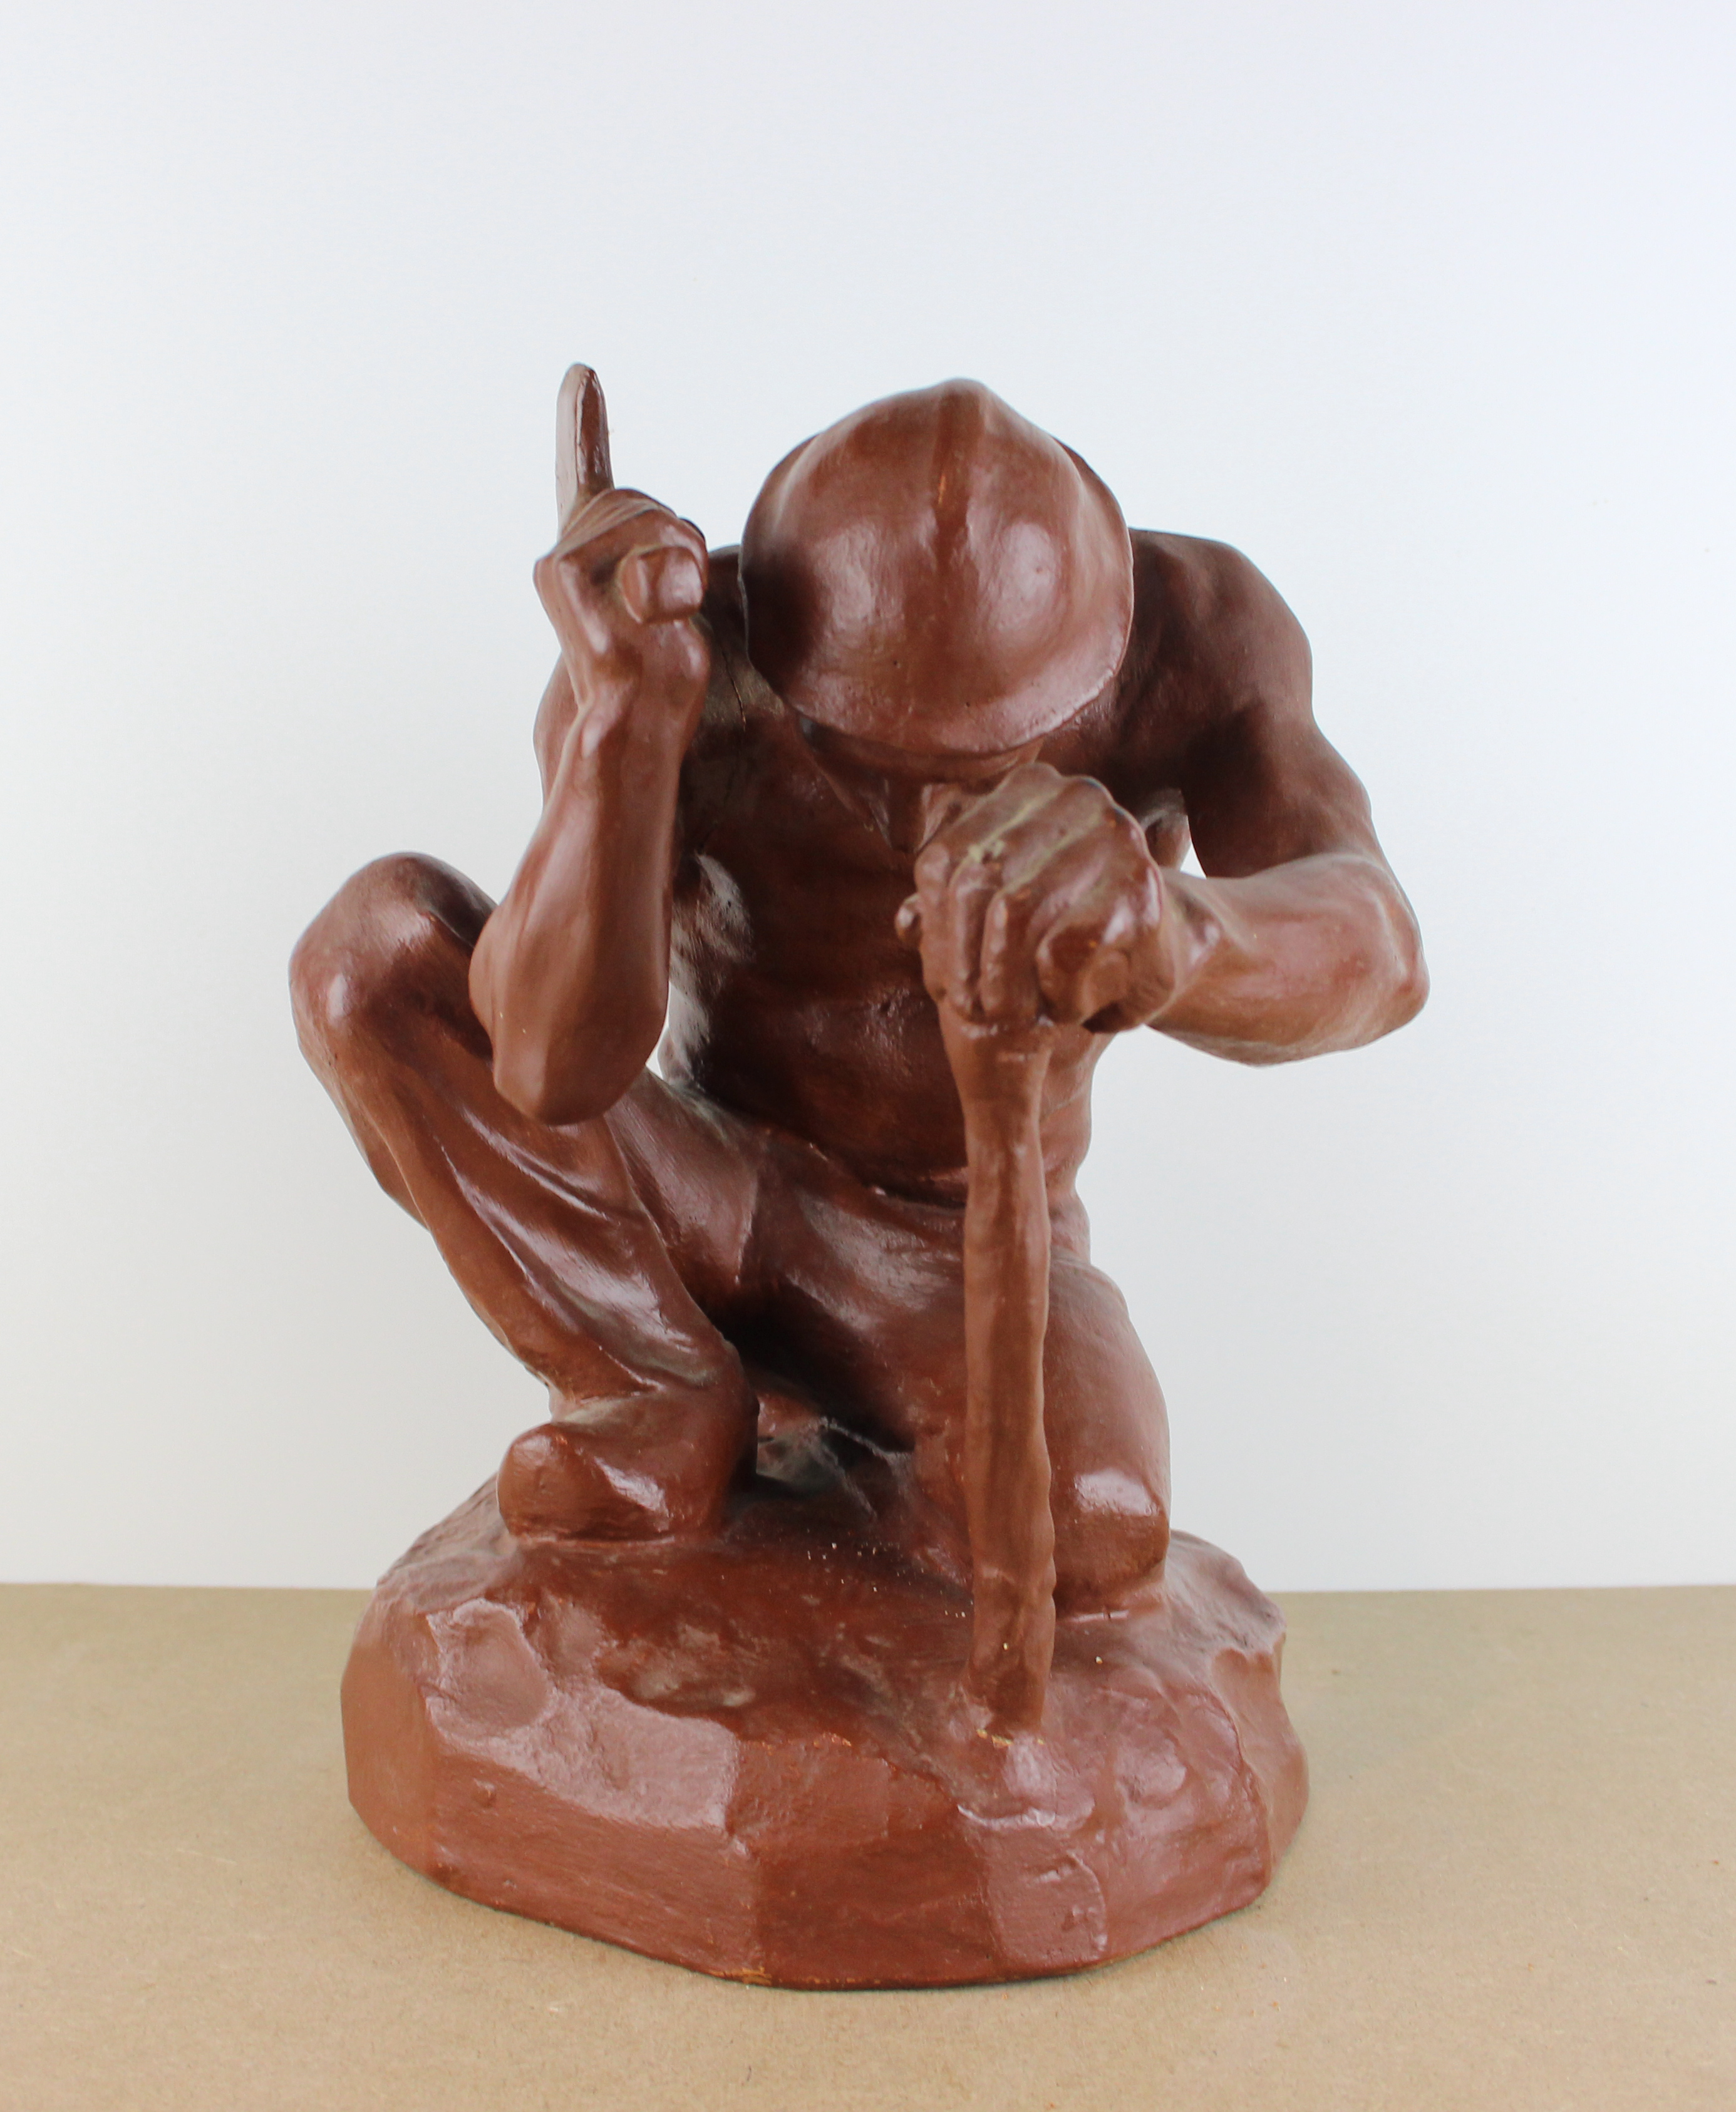 sculpture Le houilleur a la hache Gobert Lon personnage,scne rurale  terre cuite  